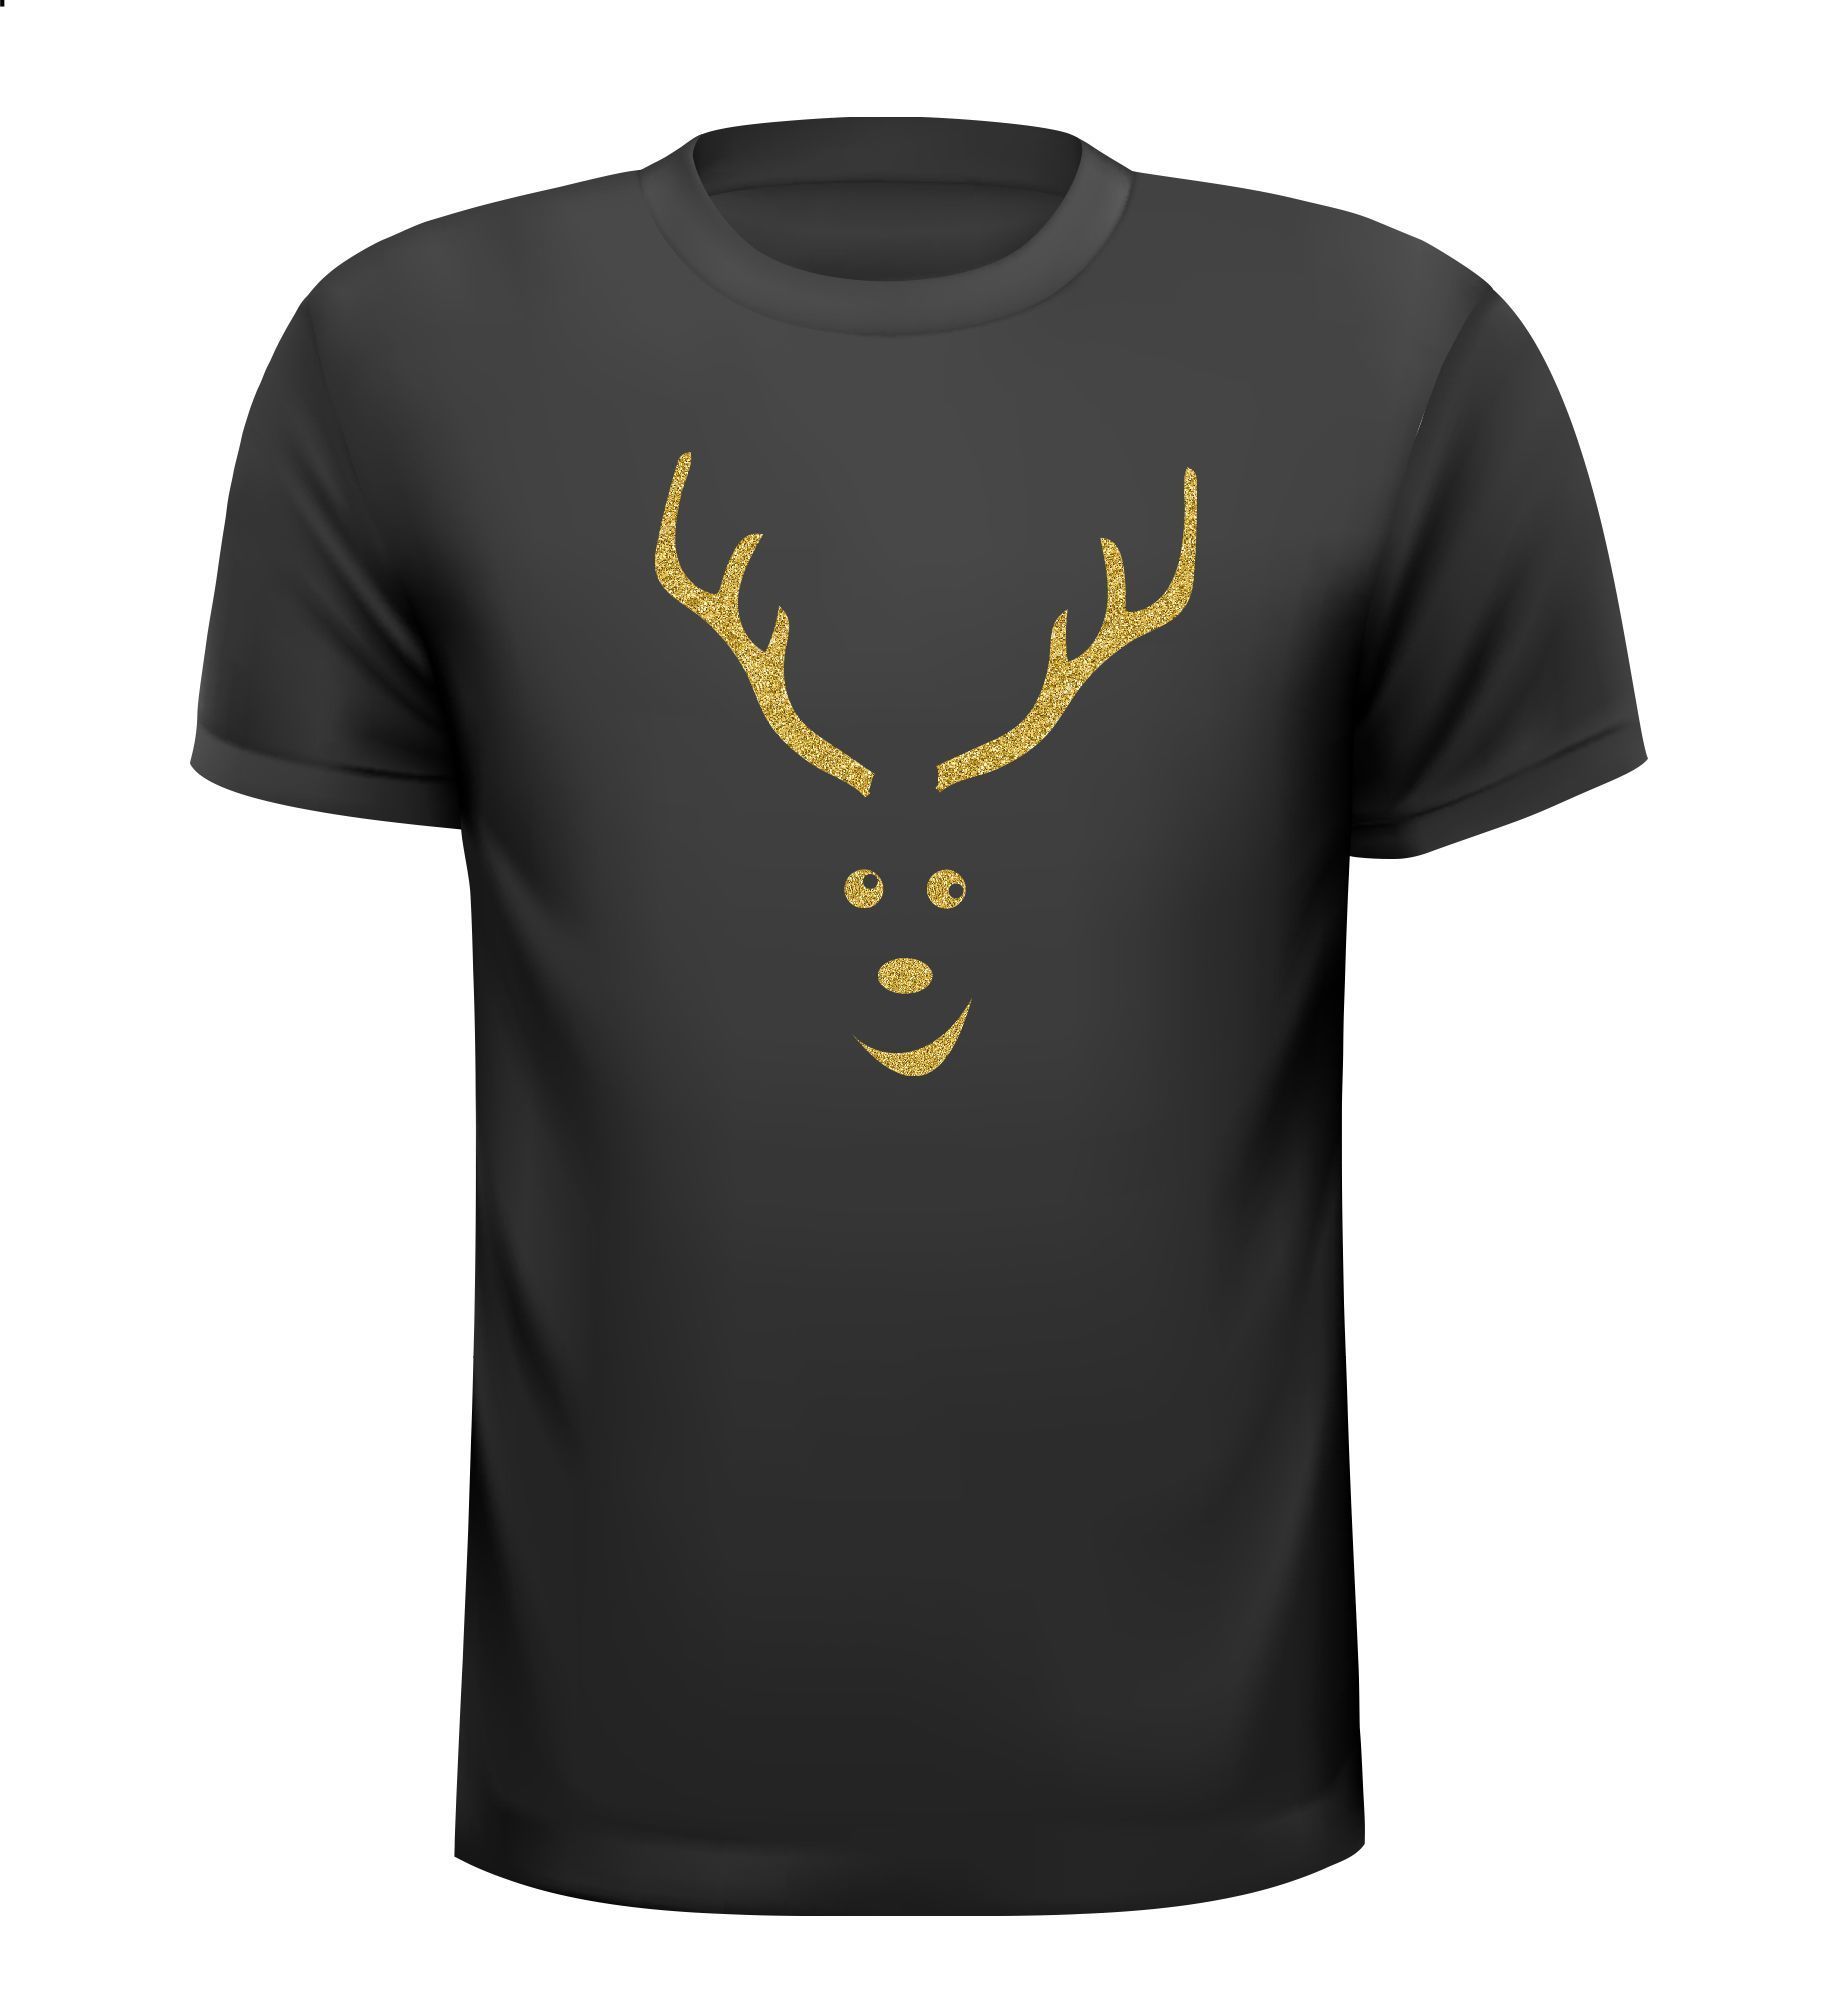 T-shirt glliter goud rendier gewei hert vrolijk print zwart shirt